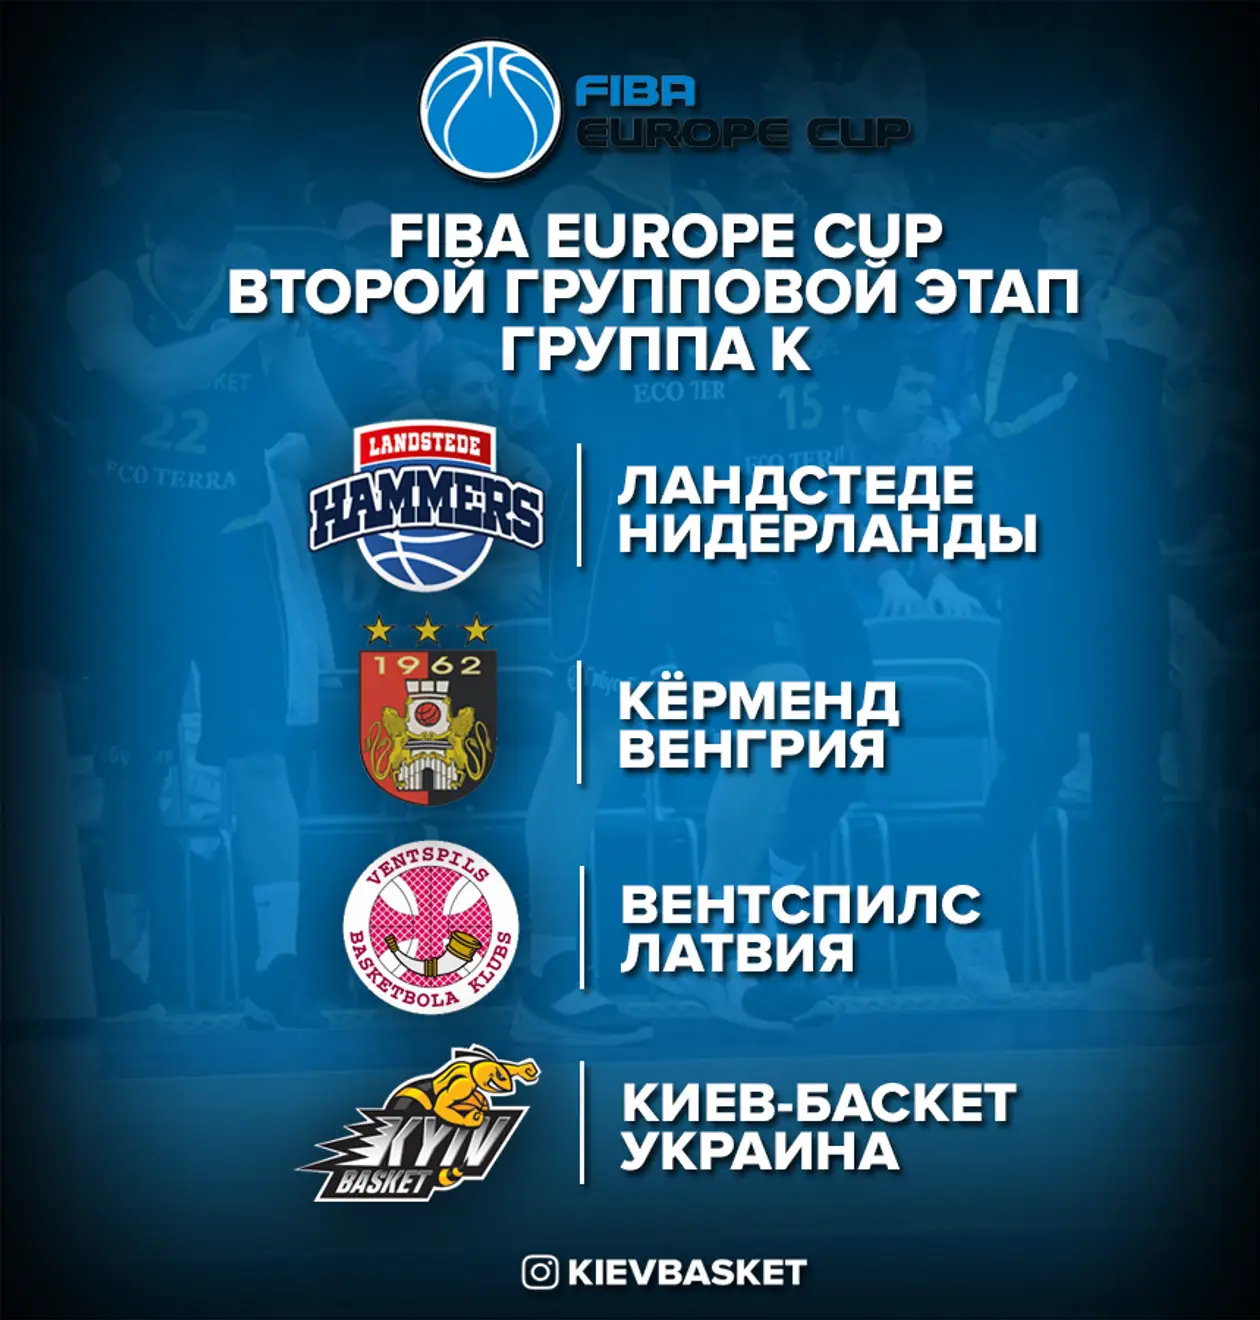 «Киев-Баскет» во втором групповом этапе Кубка Европы ФИБА. Дальше еще сложнее 